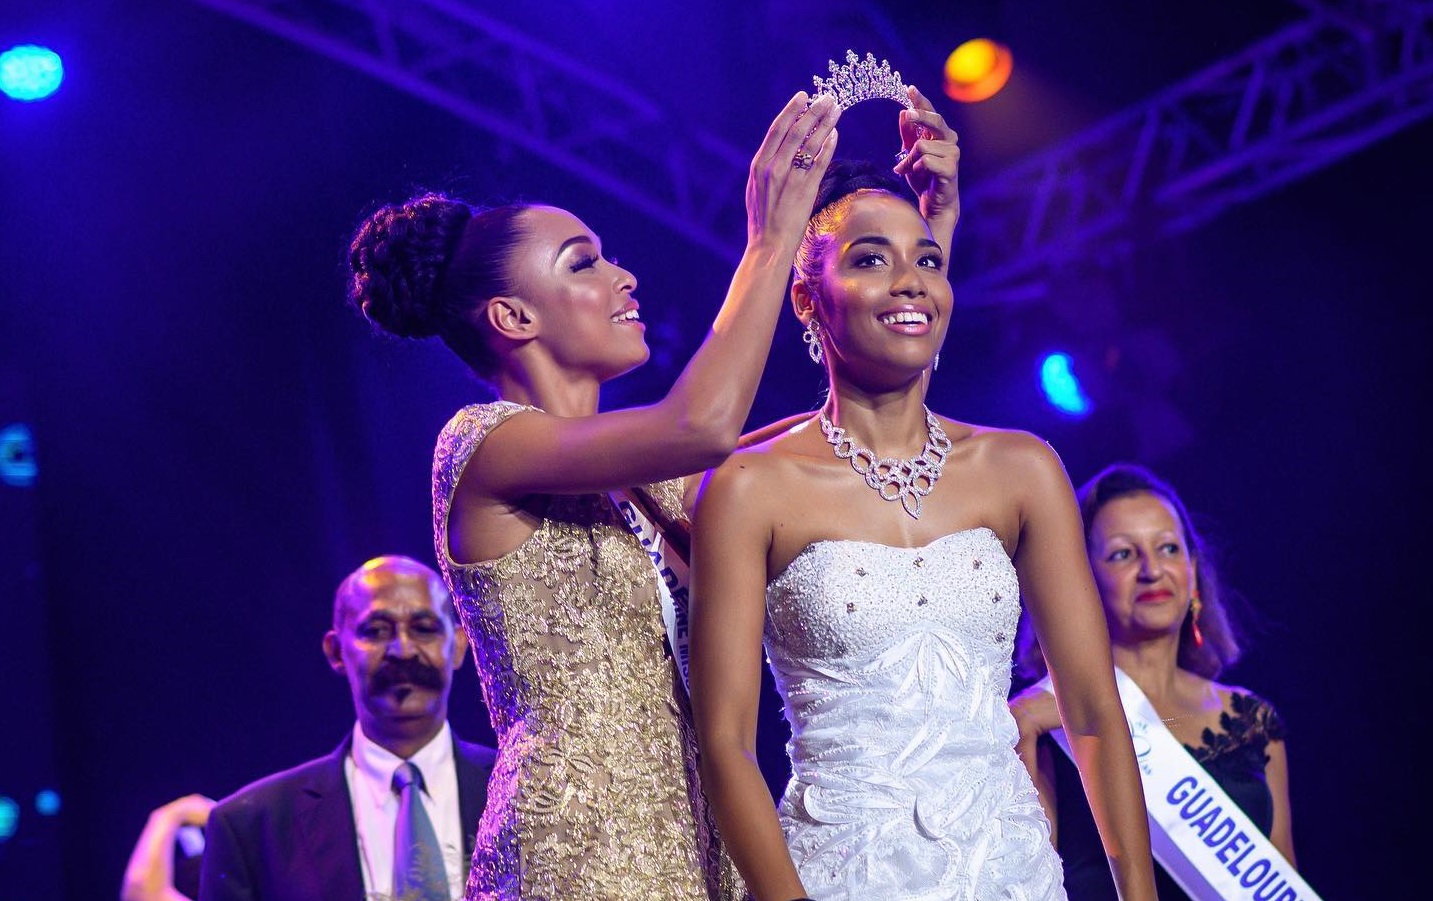     Miss Guadeloupe 2019 : où sont passés les stylistes guadeloupéens ?

